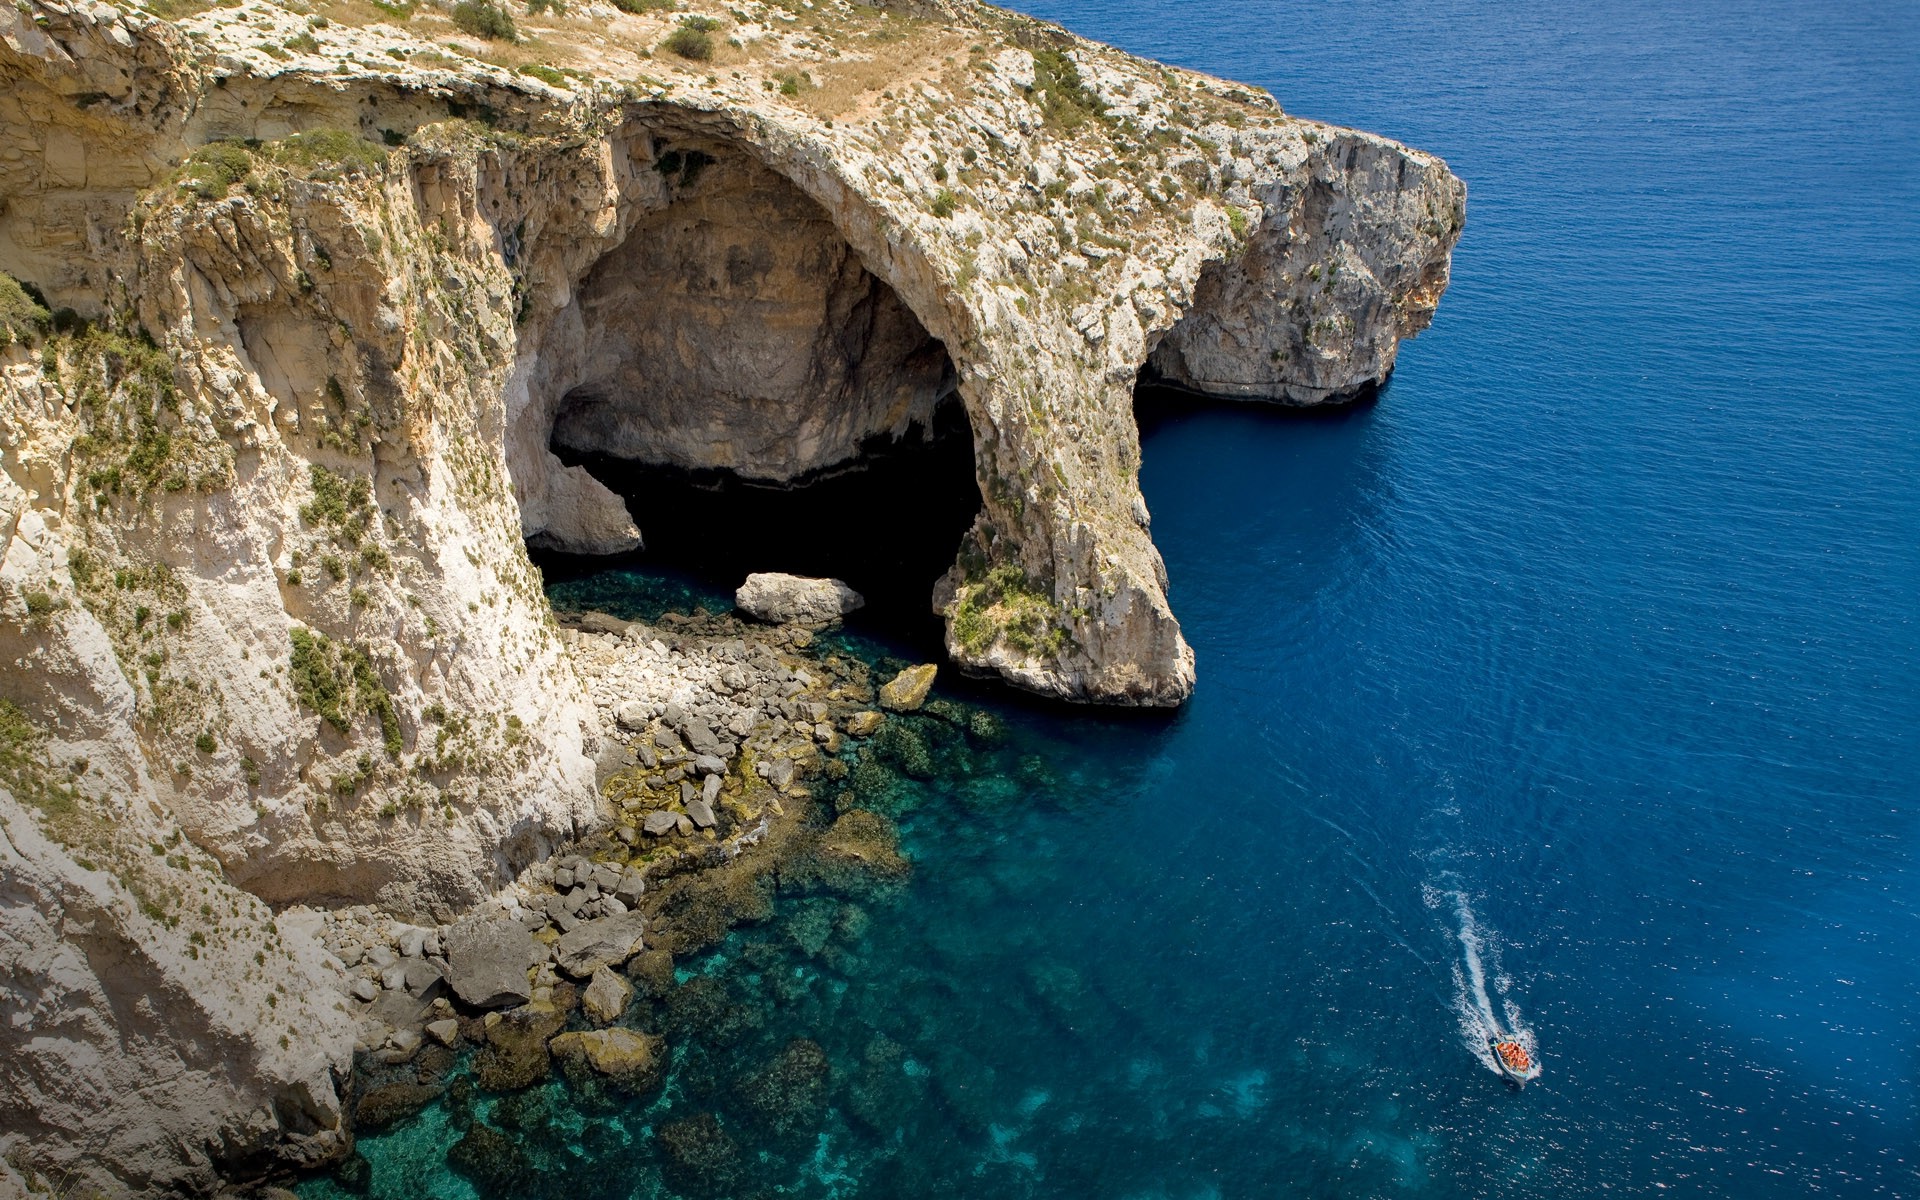 sea, Cliff, Cave, Island, Malta, Water, Boat, Blue, Coast, Beach, Nature, Landscape Wallpaper